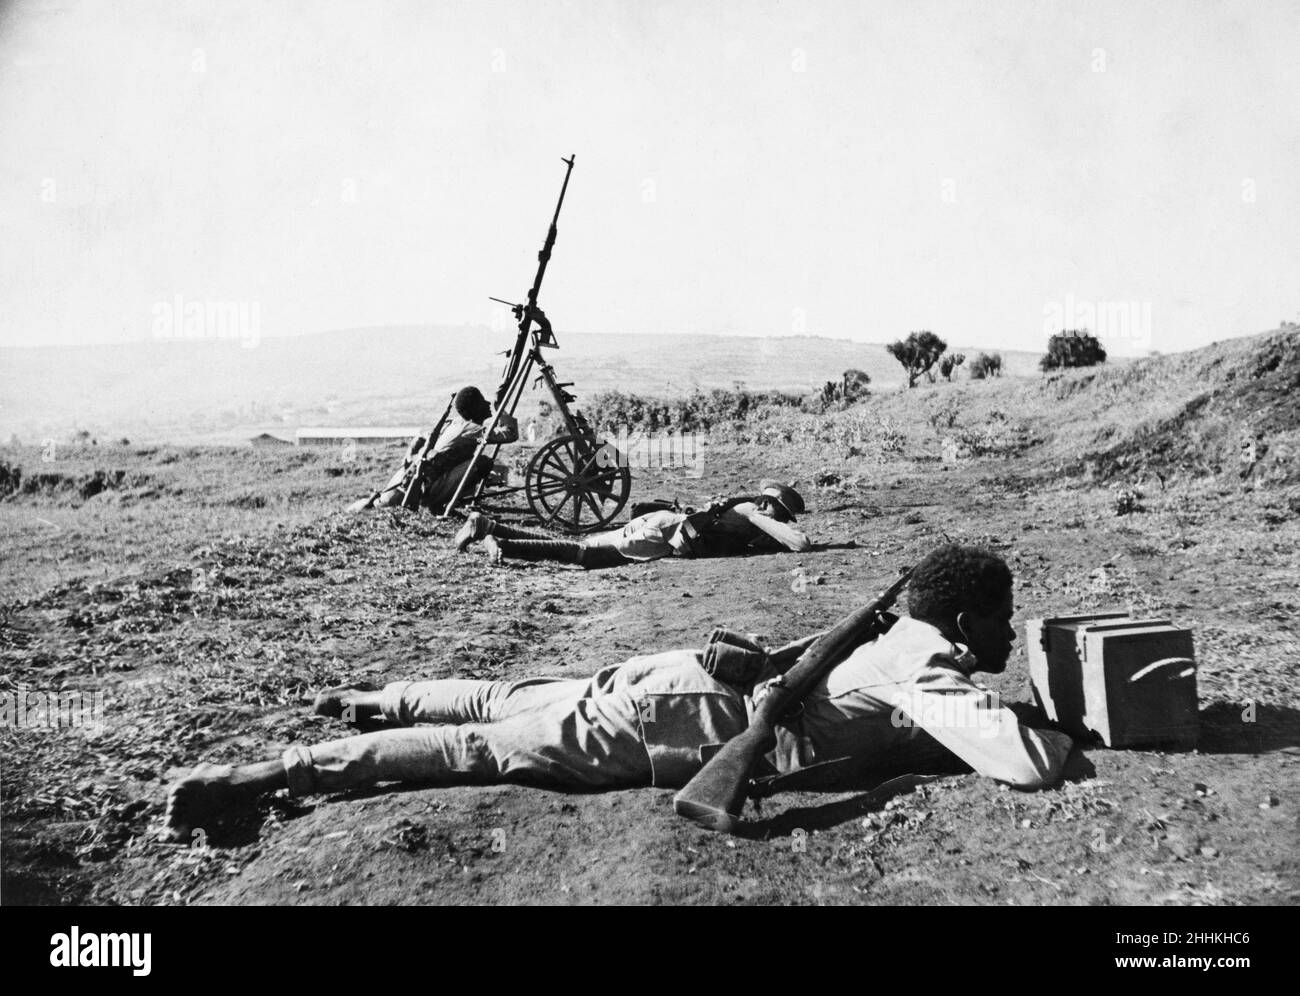 Guerre d'Abyssinian septembre 1935Abyssinian les forces sont victimes d'une attaque aérienne sur le front d'Ogadan.Un fusil à tir rapide adapté est utilisé comme un divertissement anti-avion pour défendre les troupes. Banque D'Images